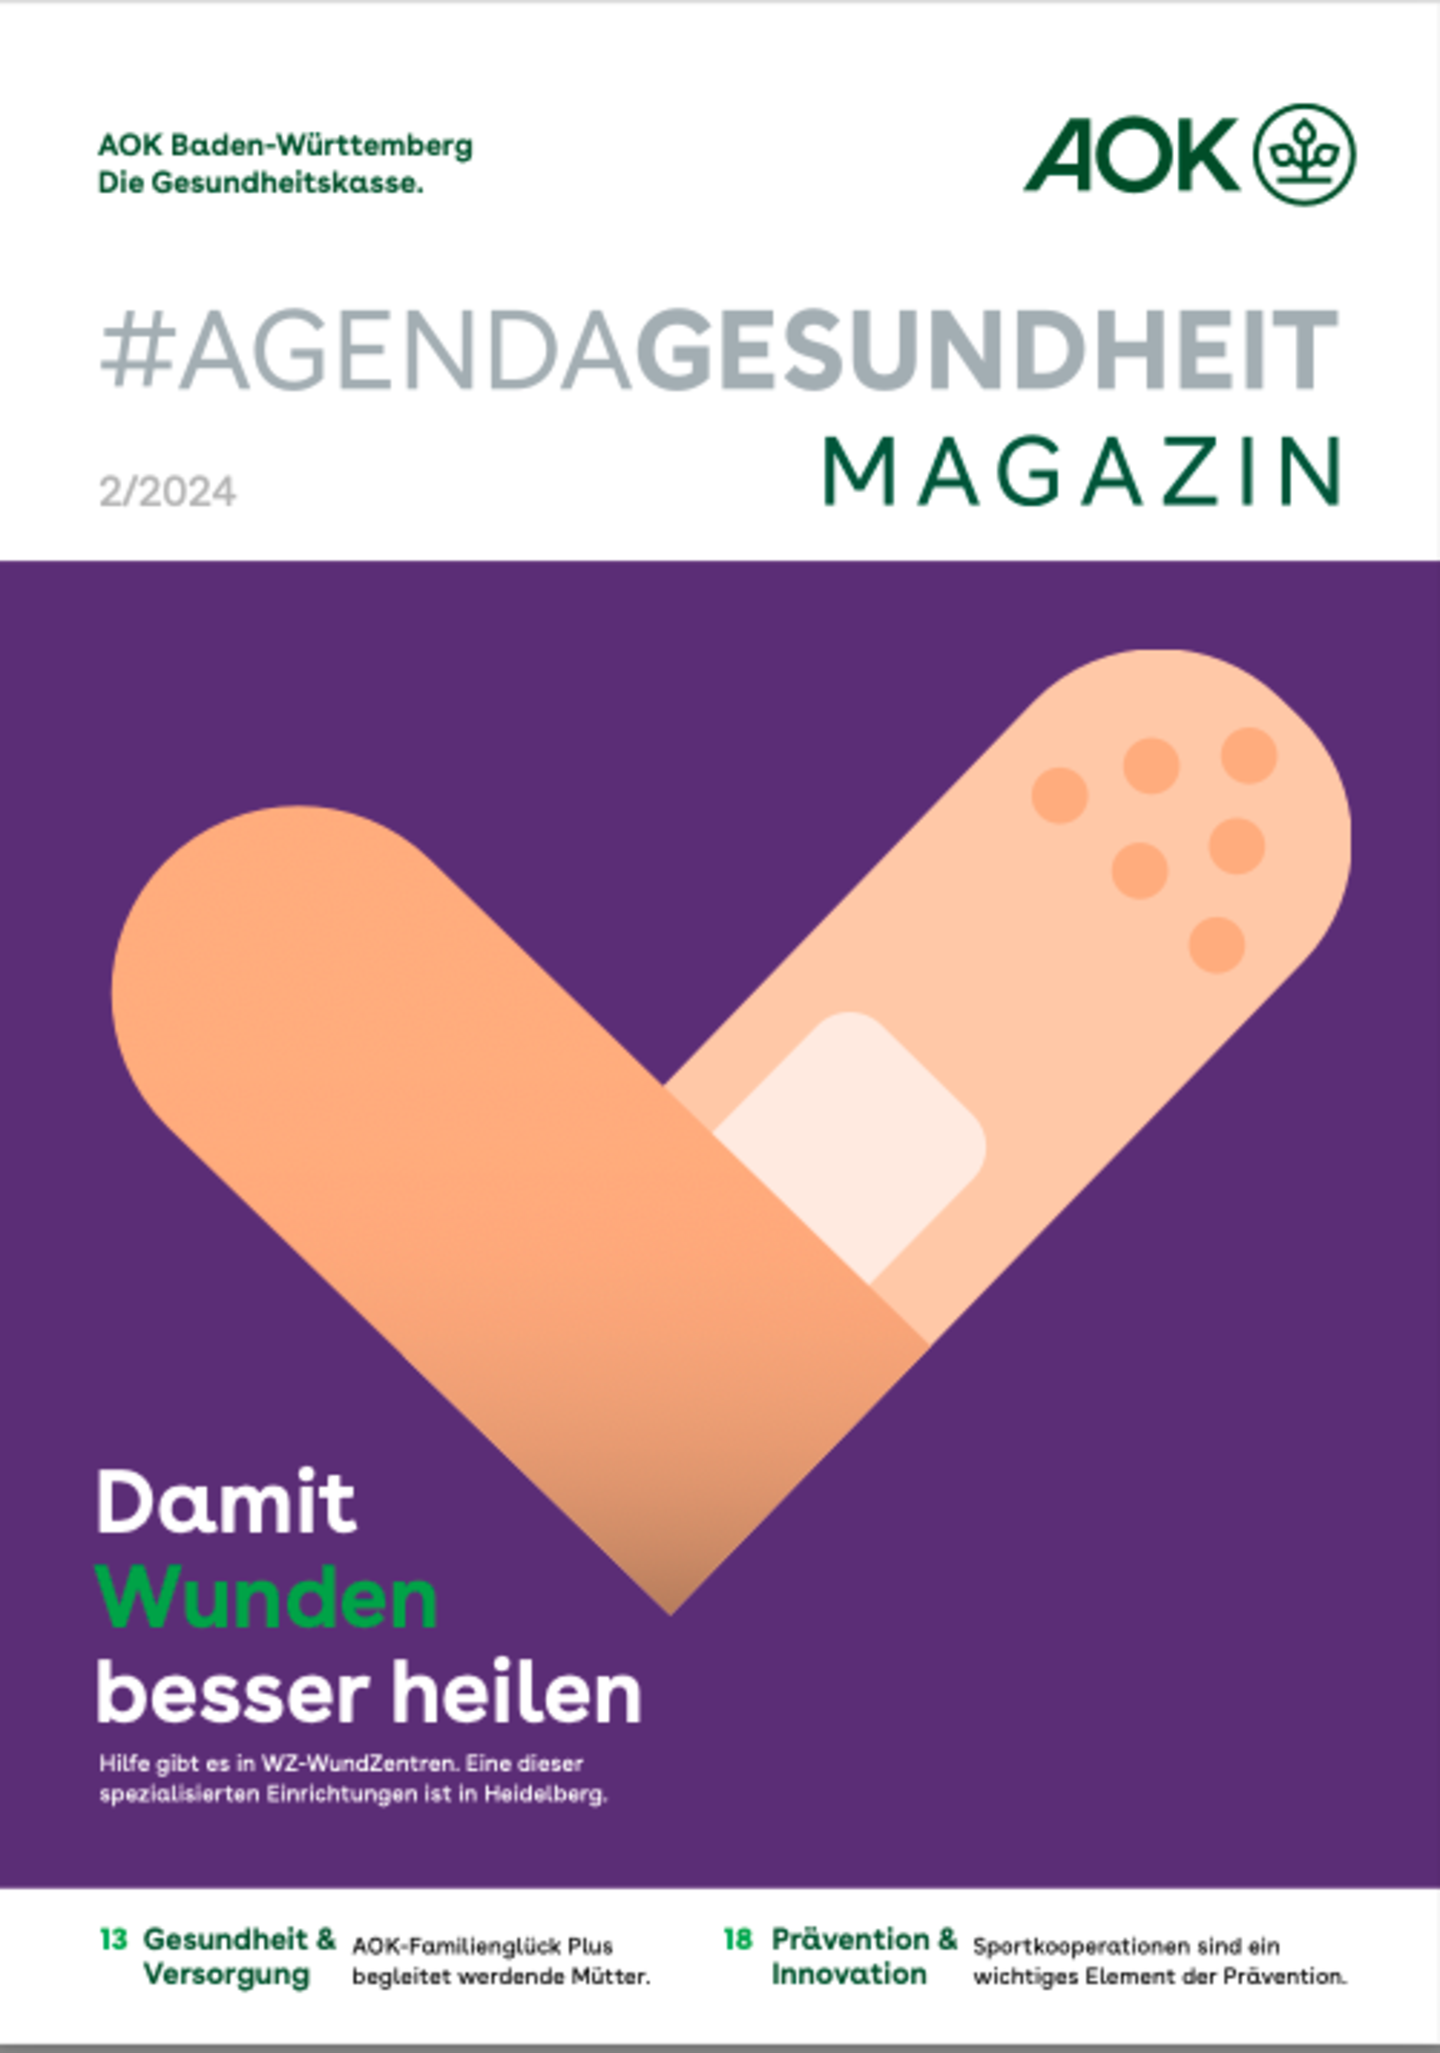 Foto: Darstellung des Titels vom Magazin #AgendaGesundheit 02/2024